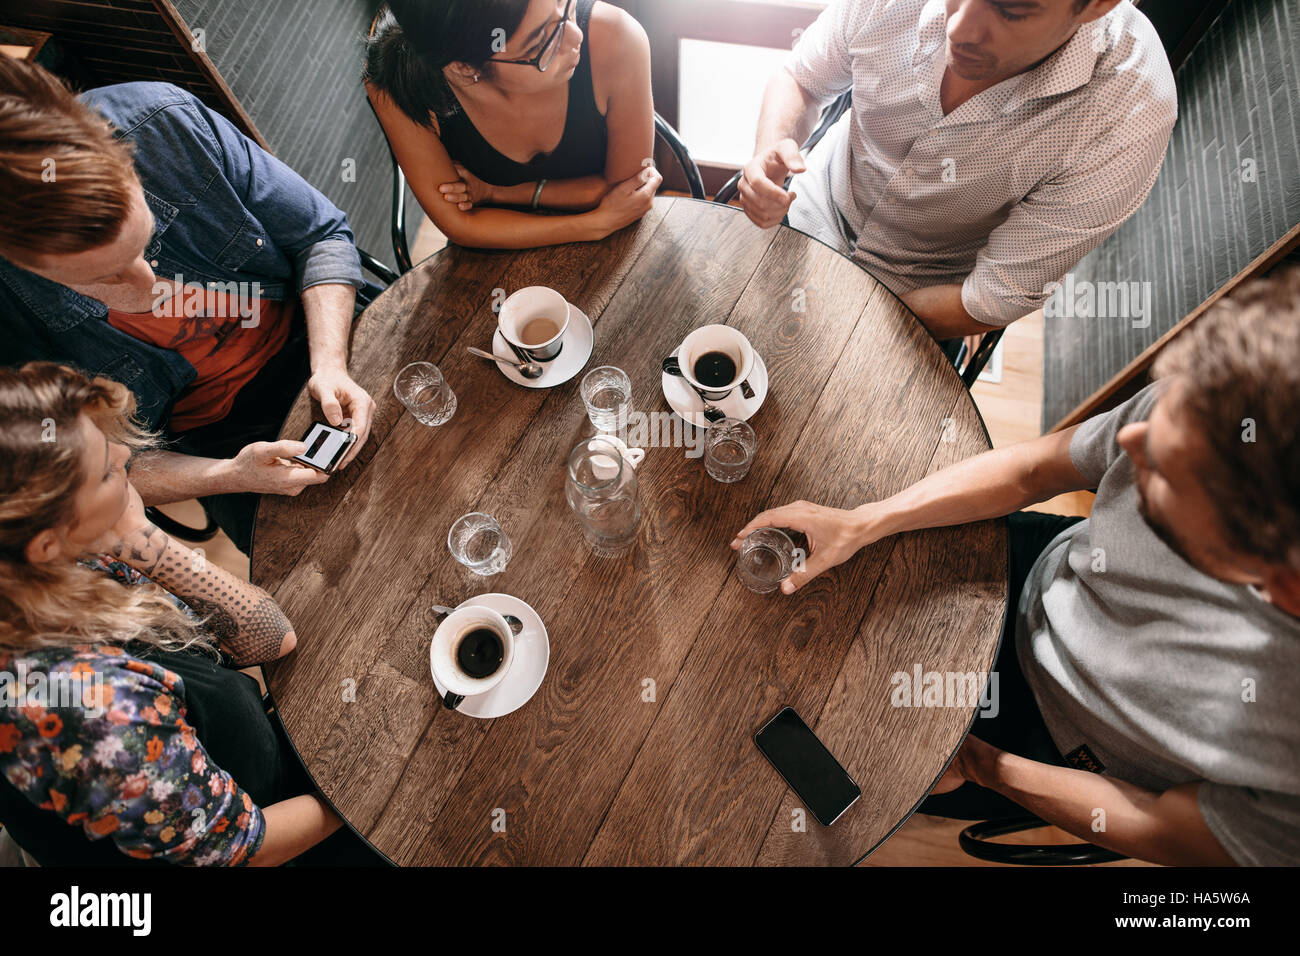 Vista superior de jóvenes sentados en el café con una taza de café en la mesa. Grupo de amigos en la cafetería. Foto de stock